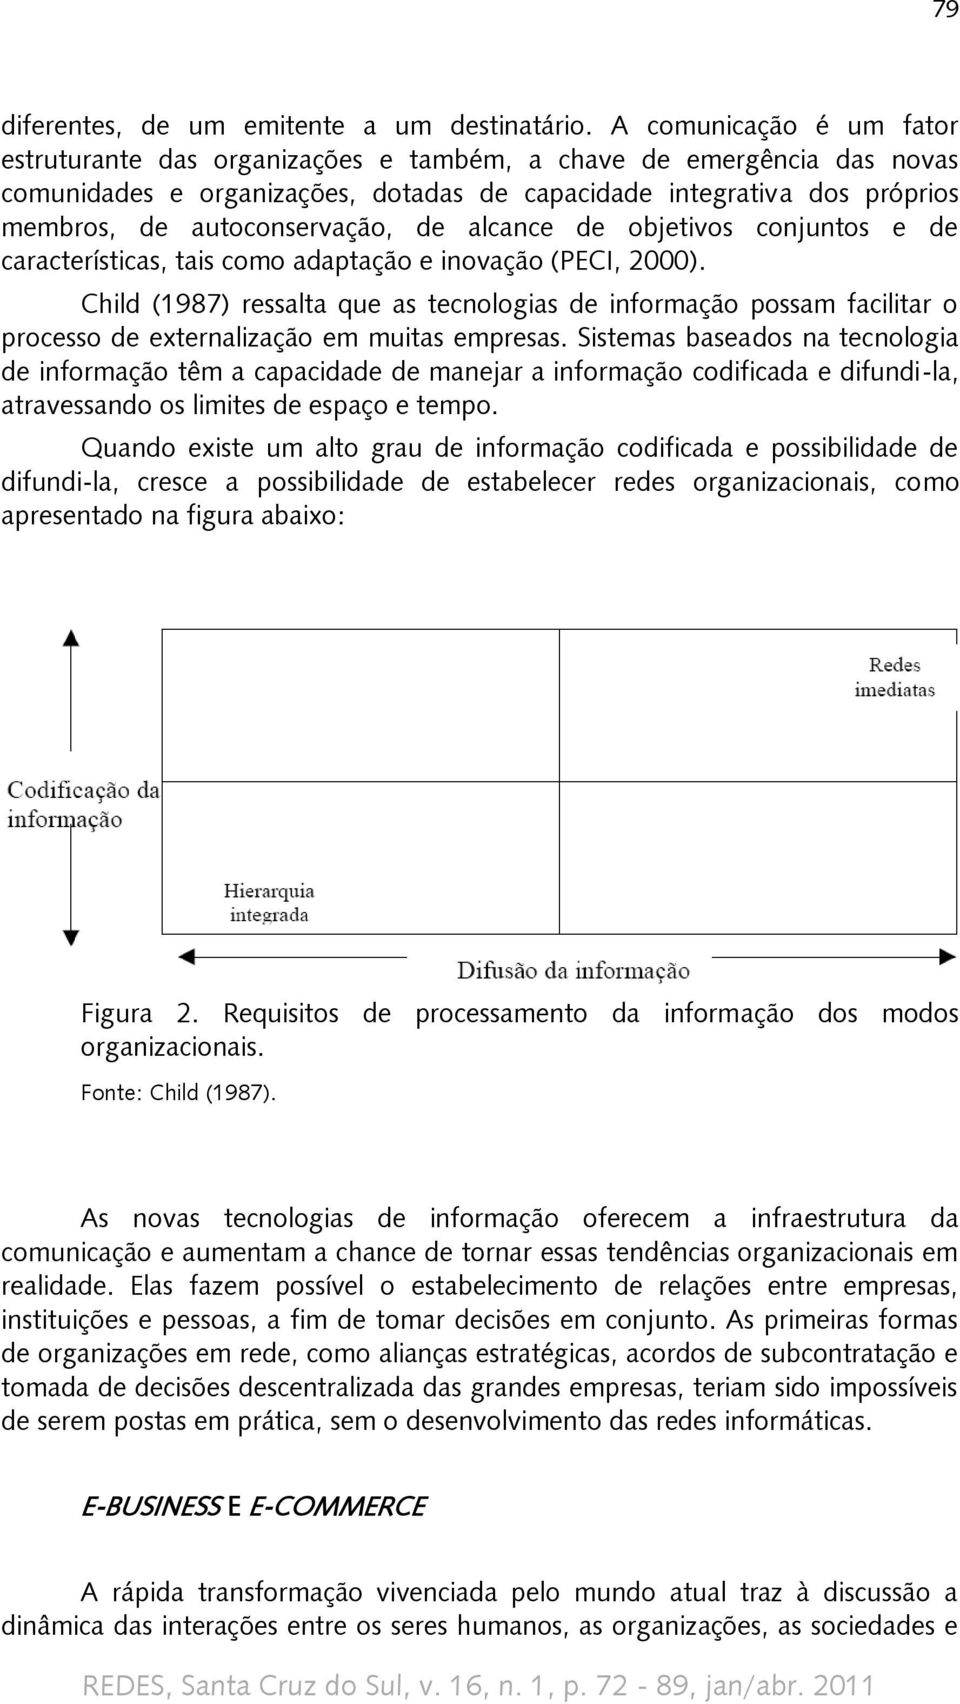 autoconservação, de alcance de objetivos conjuntos e de características, tais como adaptação e inovação (PECI, 2000).